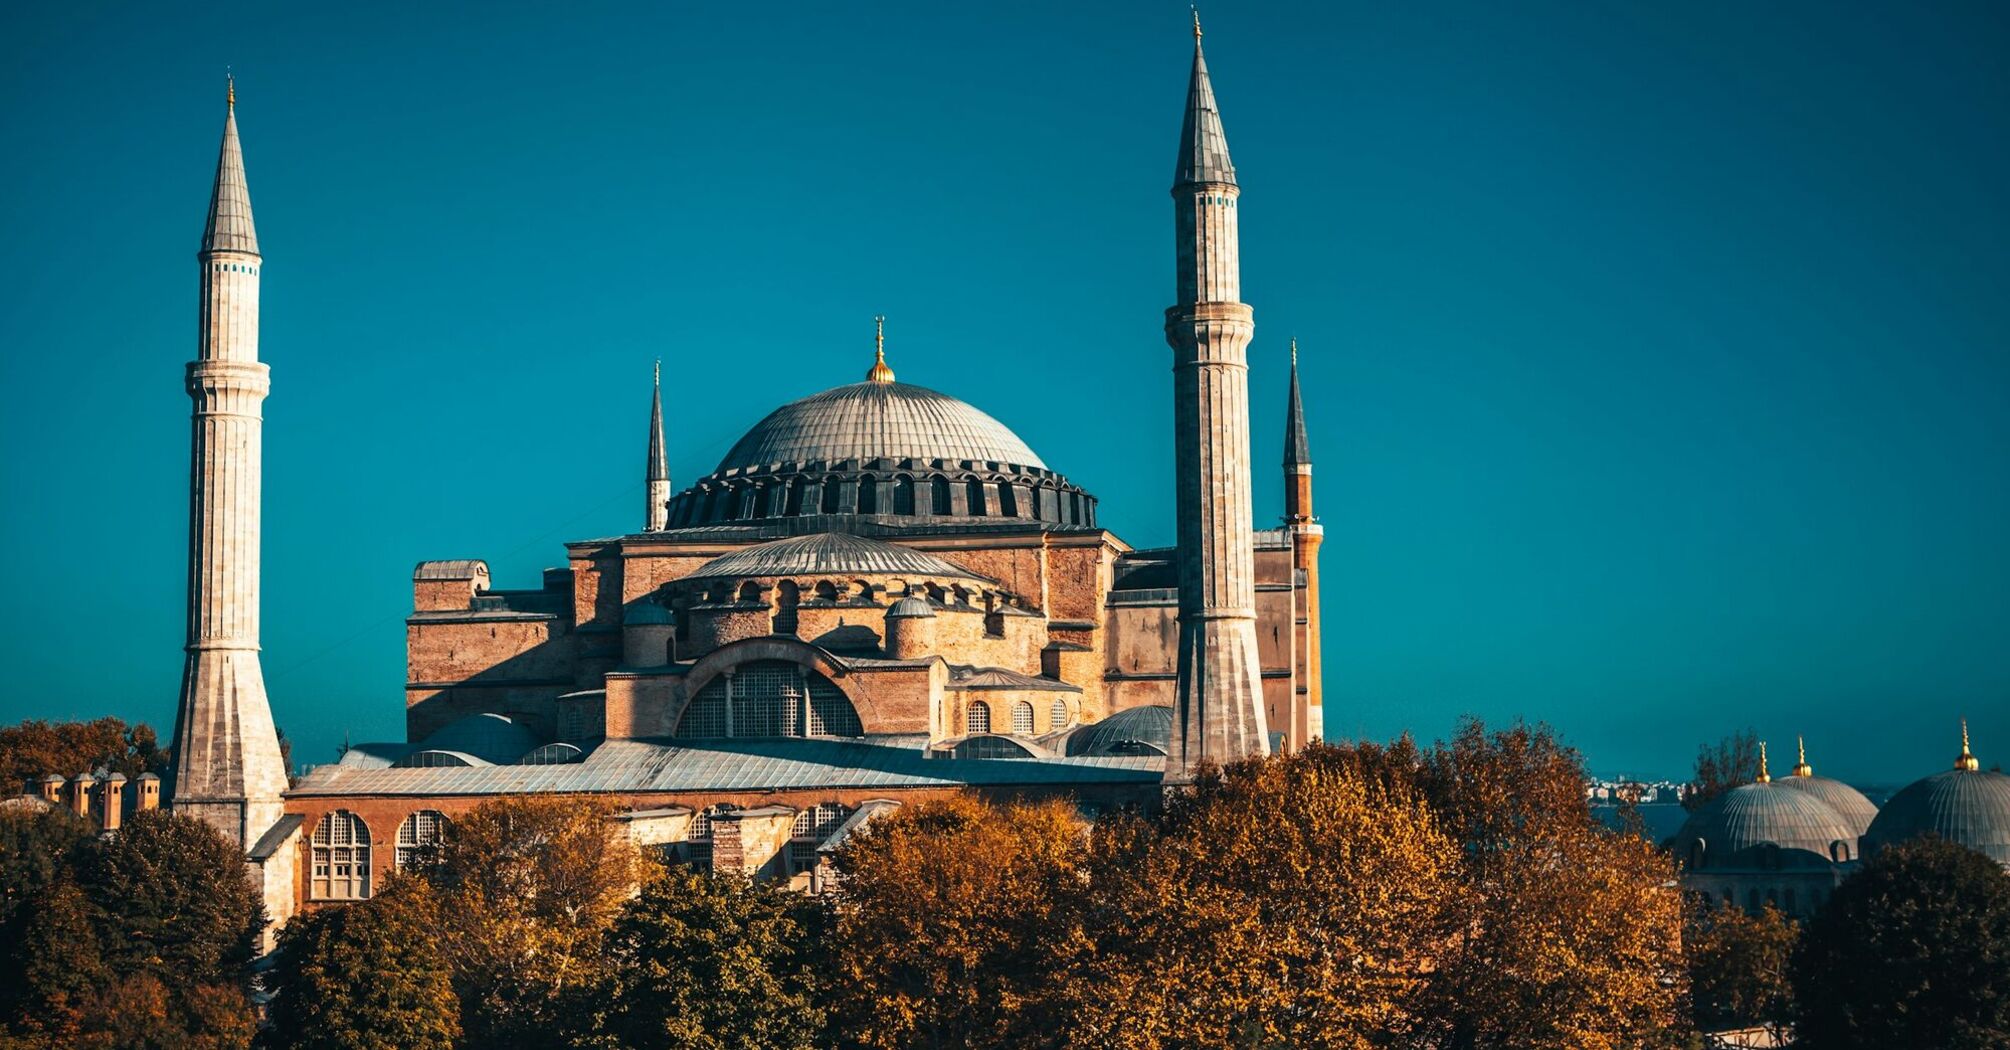 Hagia Sophia during the autumn